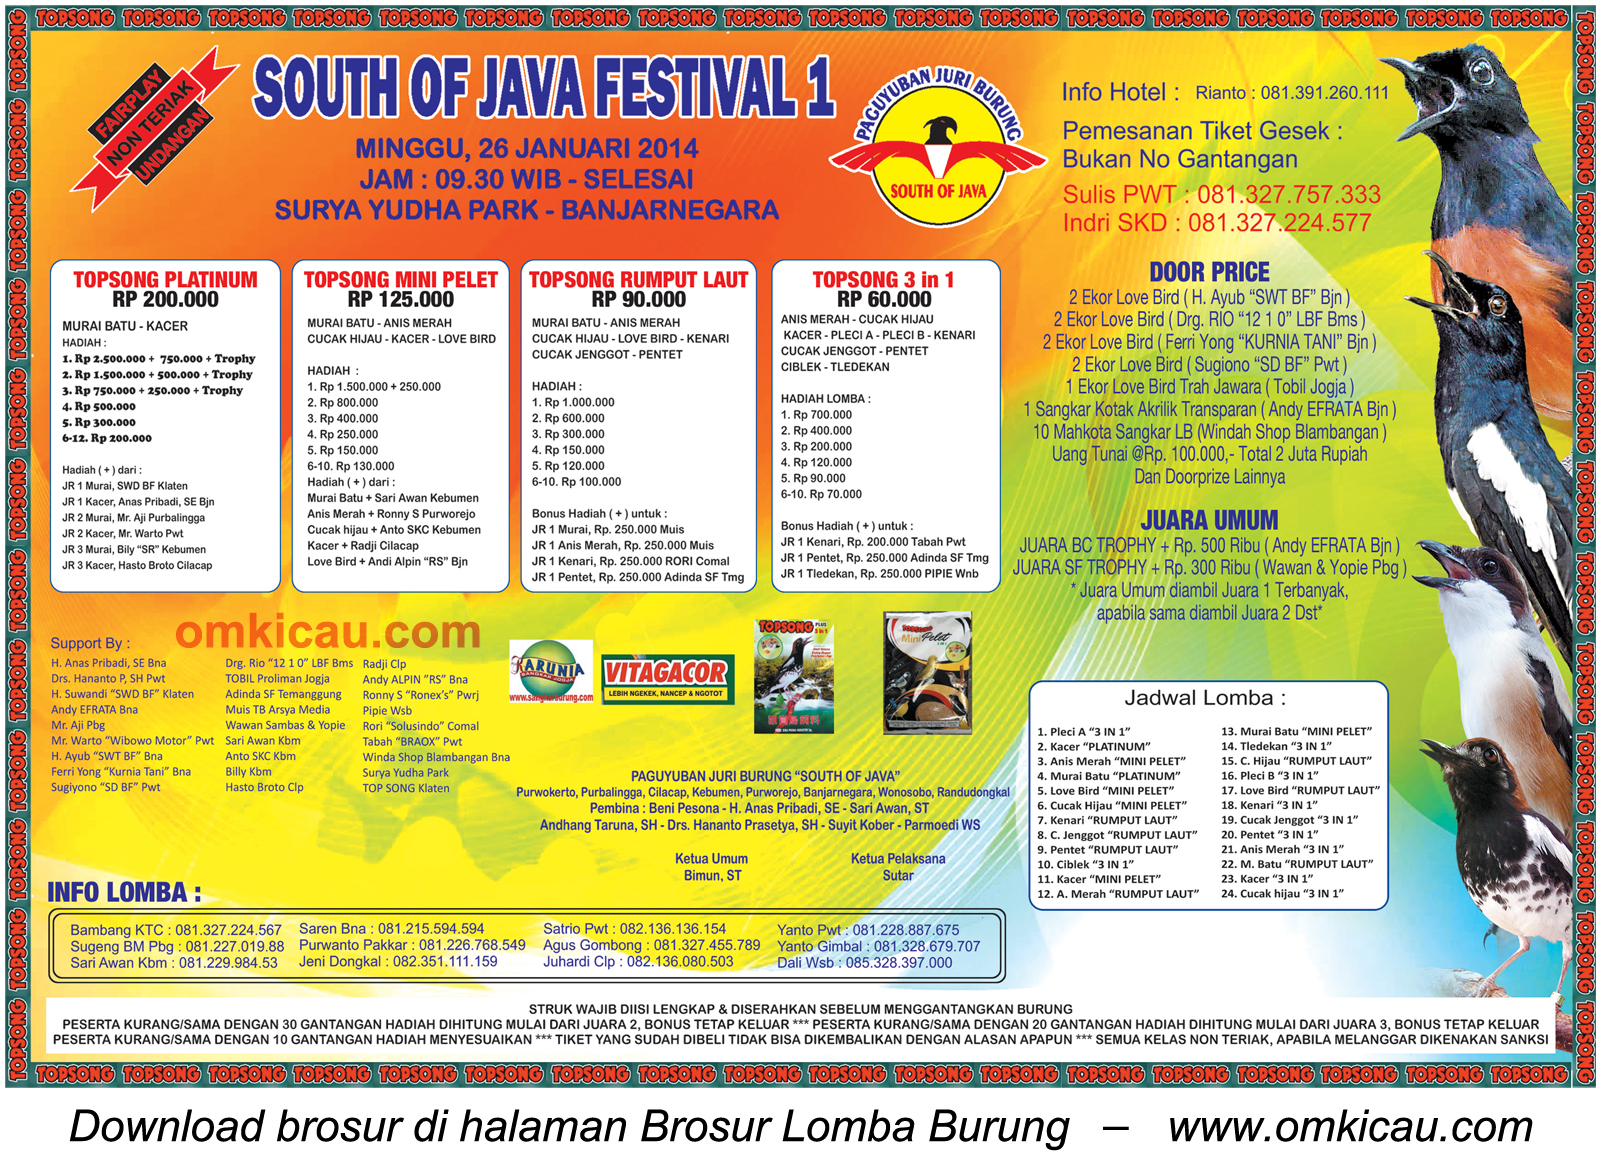 Brosur Lomba Burung Berkicau South of Java Festival 1, Banjarnegara, 26 Januari 2014